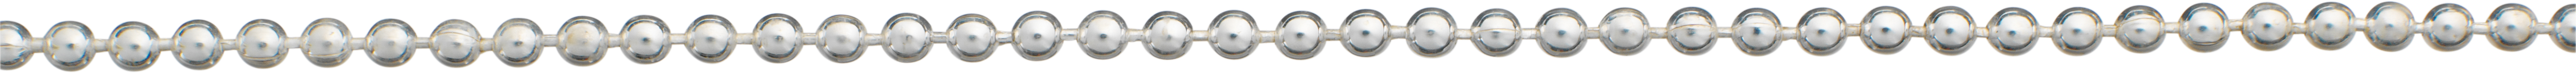 Ball chain silver 925/- Ø 2,00mm